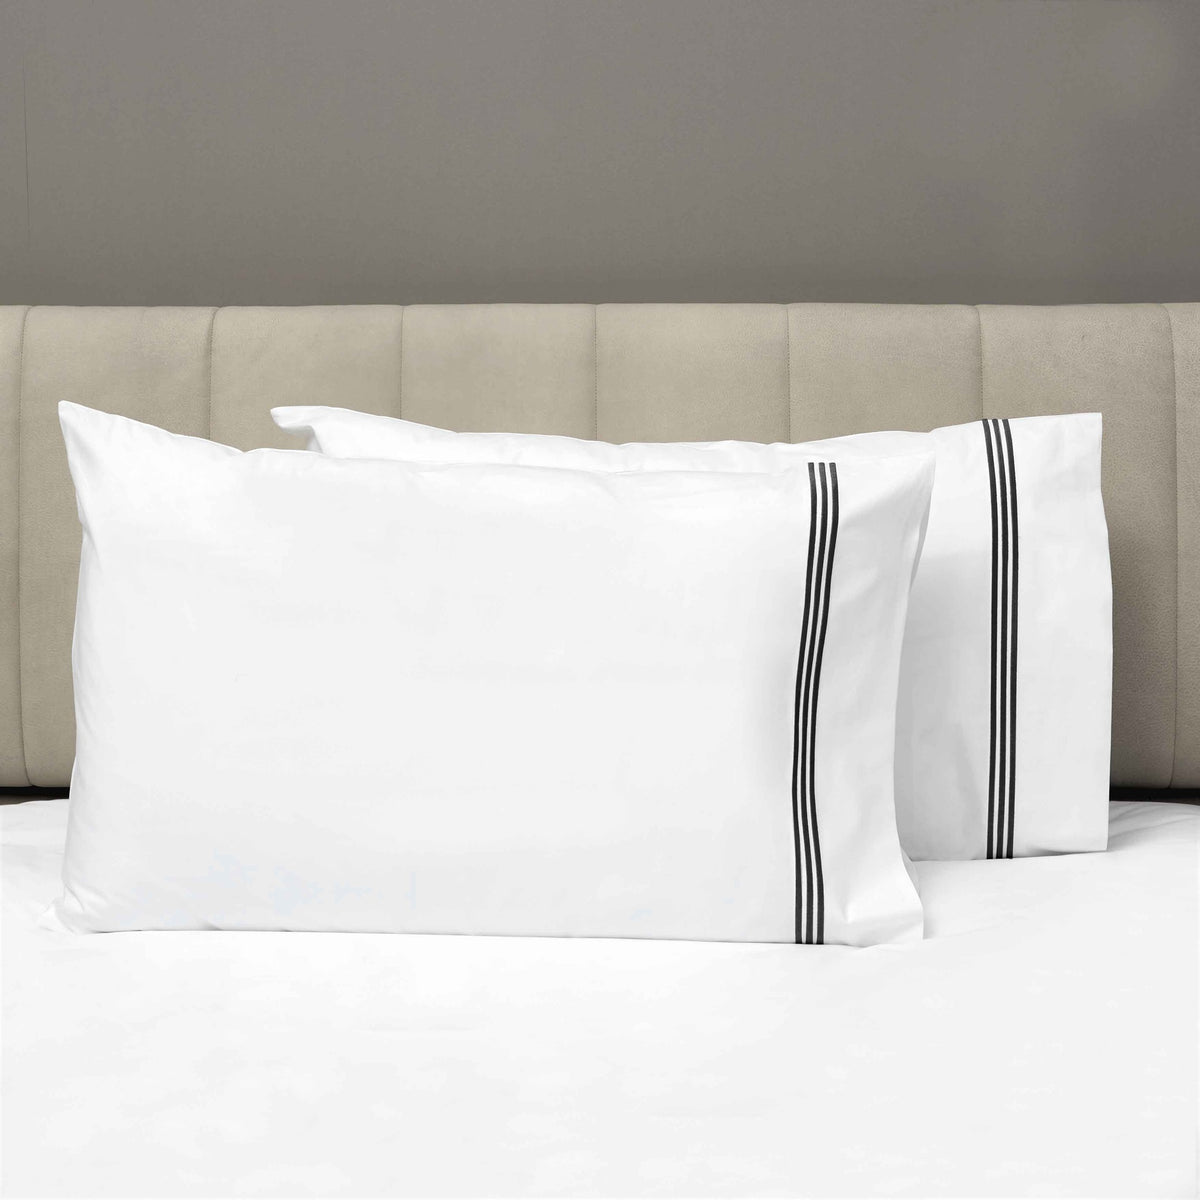 Pair of Pillowcases of Signoria Platinum Percale Bedding in White/Black Color